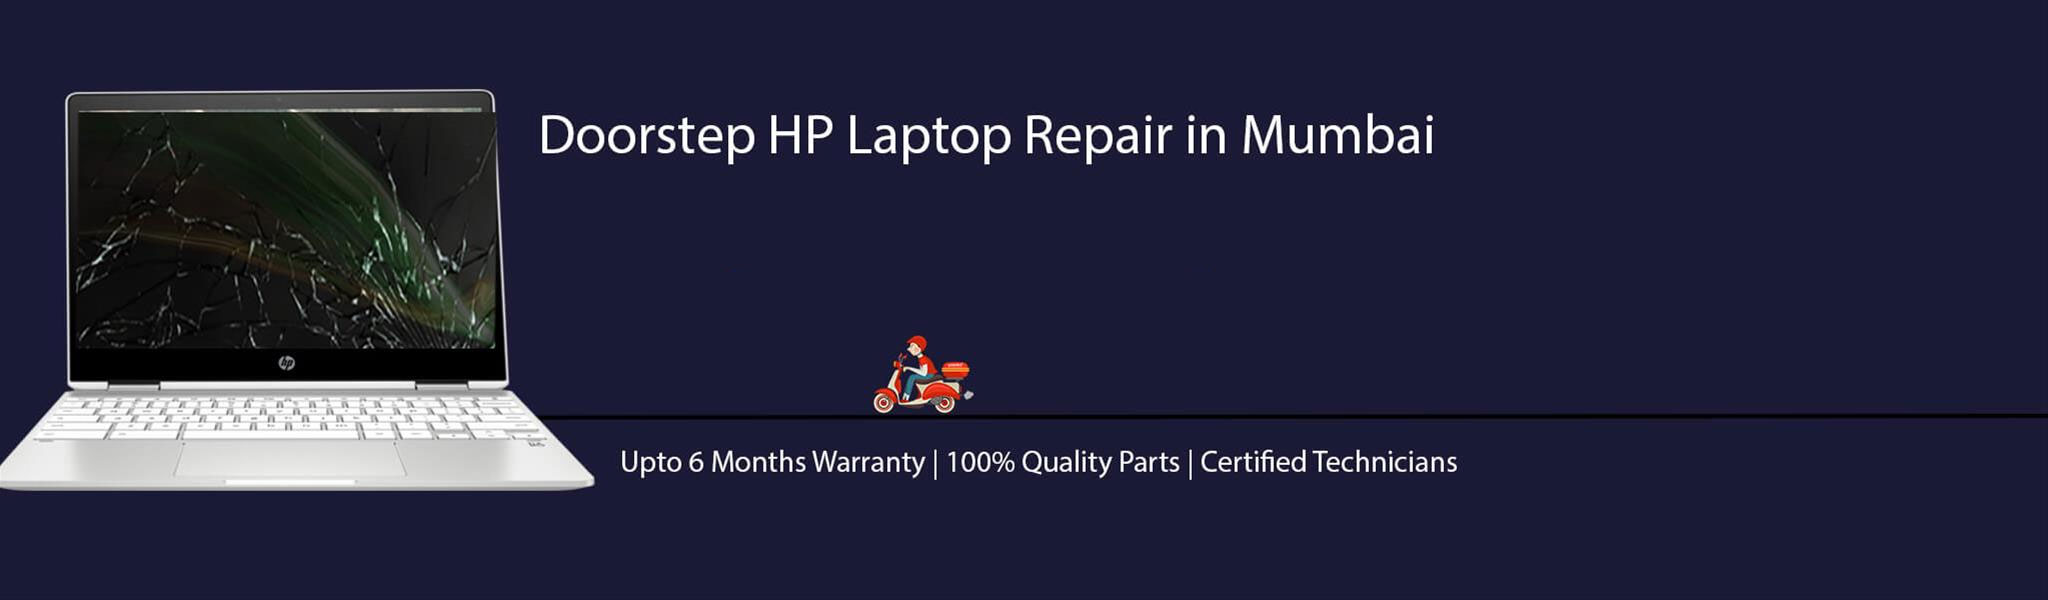 HP-laptop-banner-mumbai.jpg